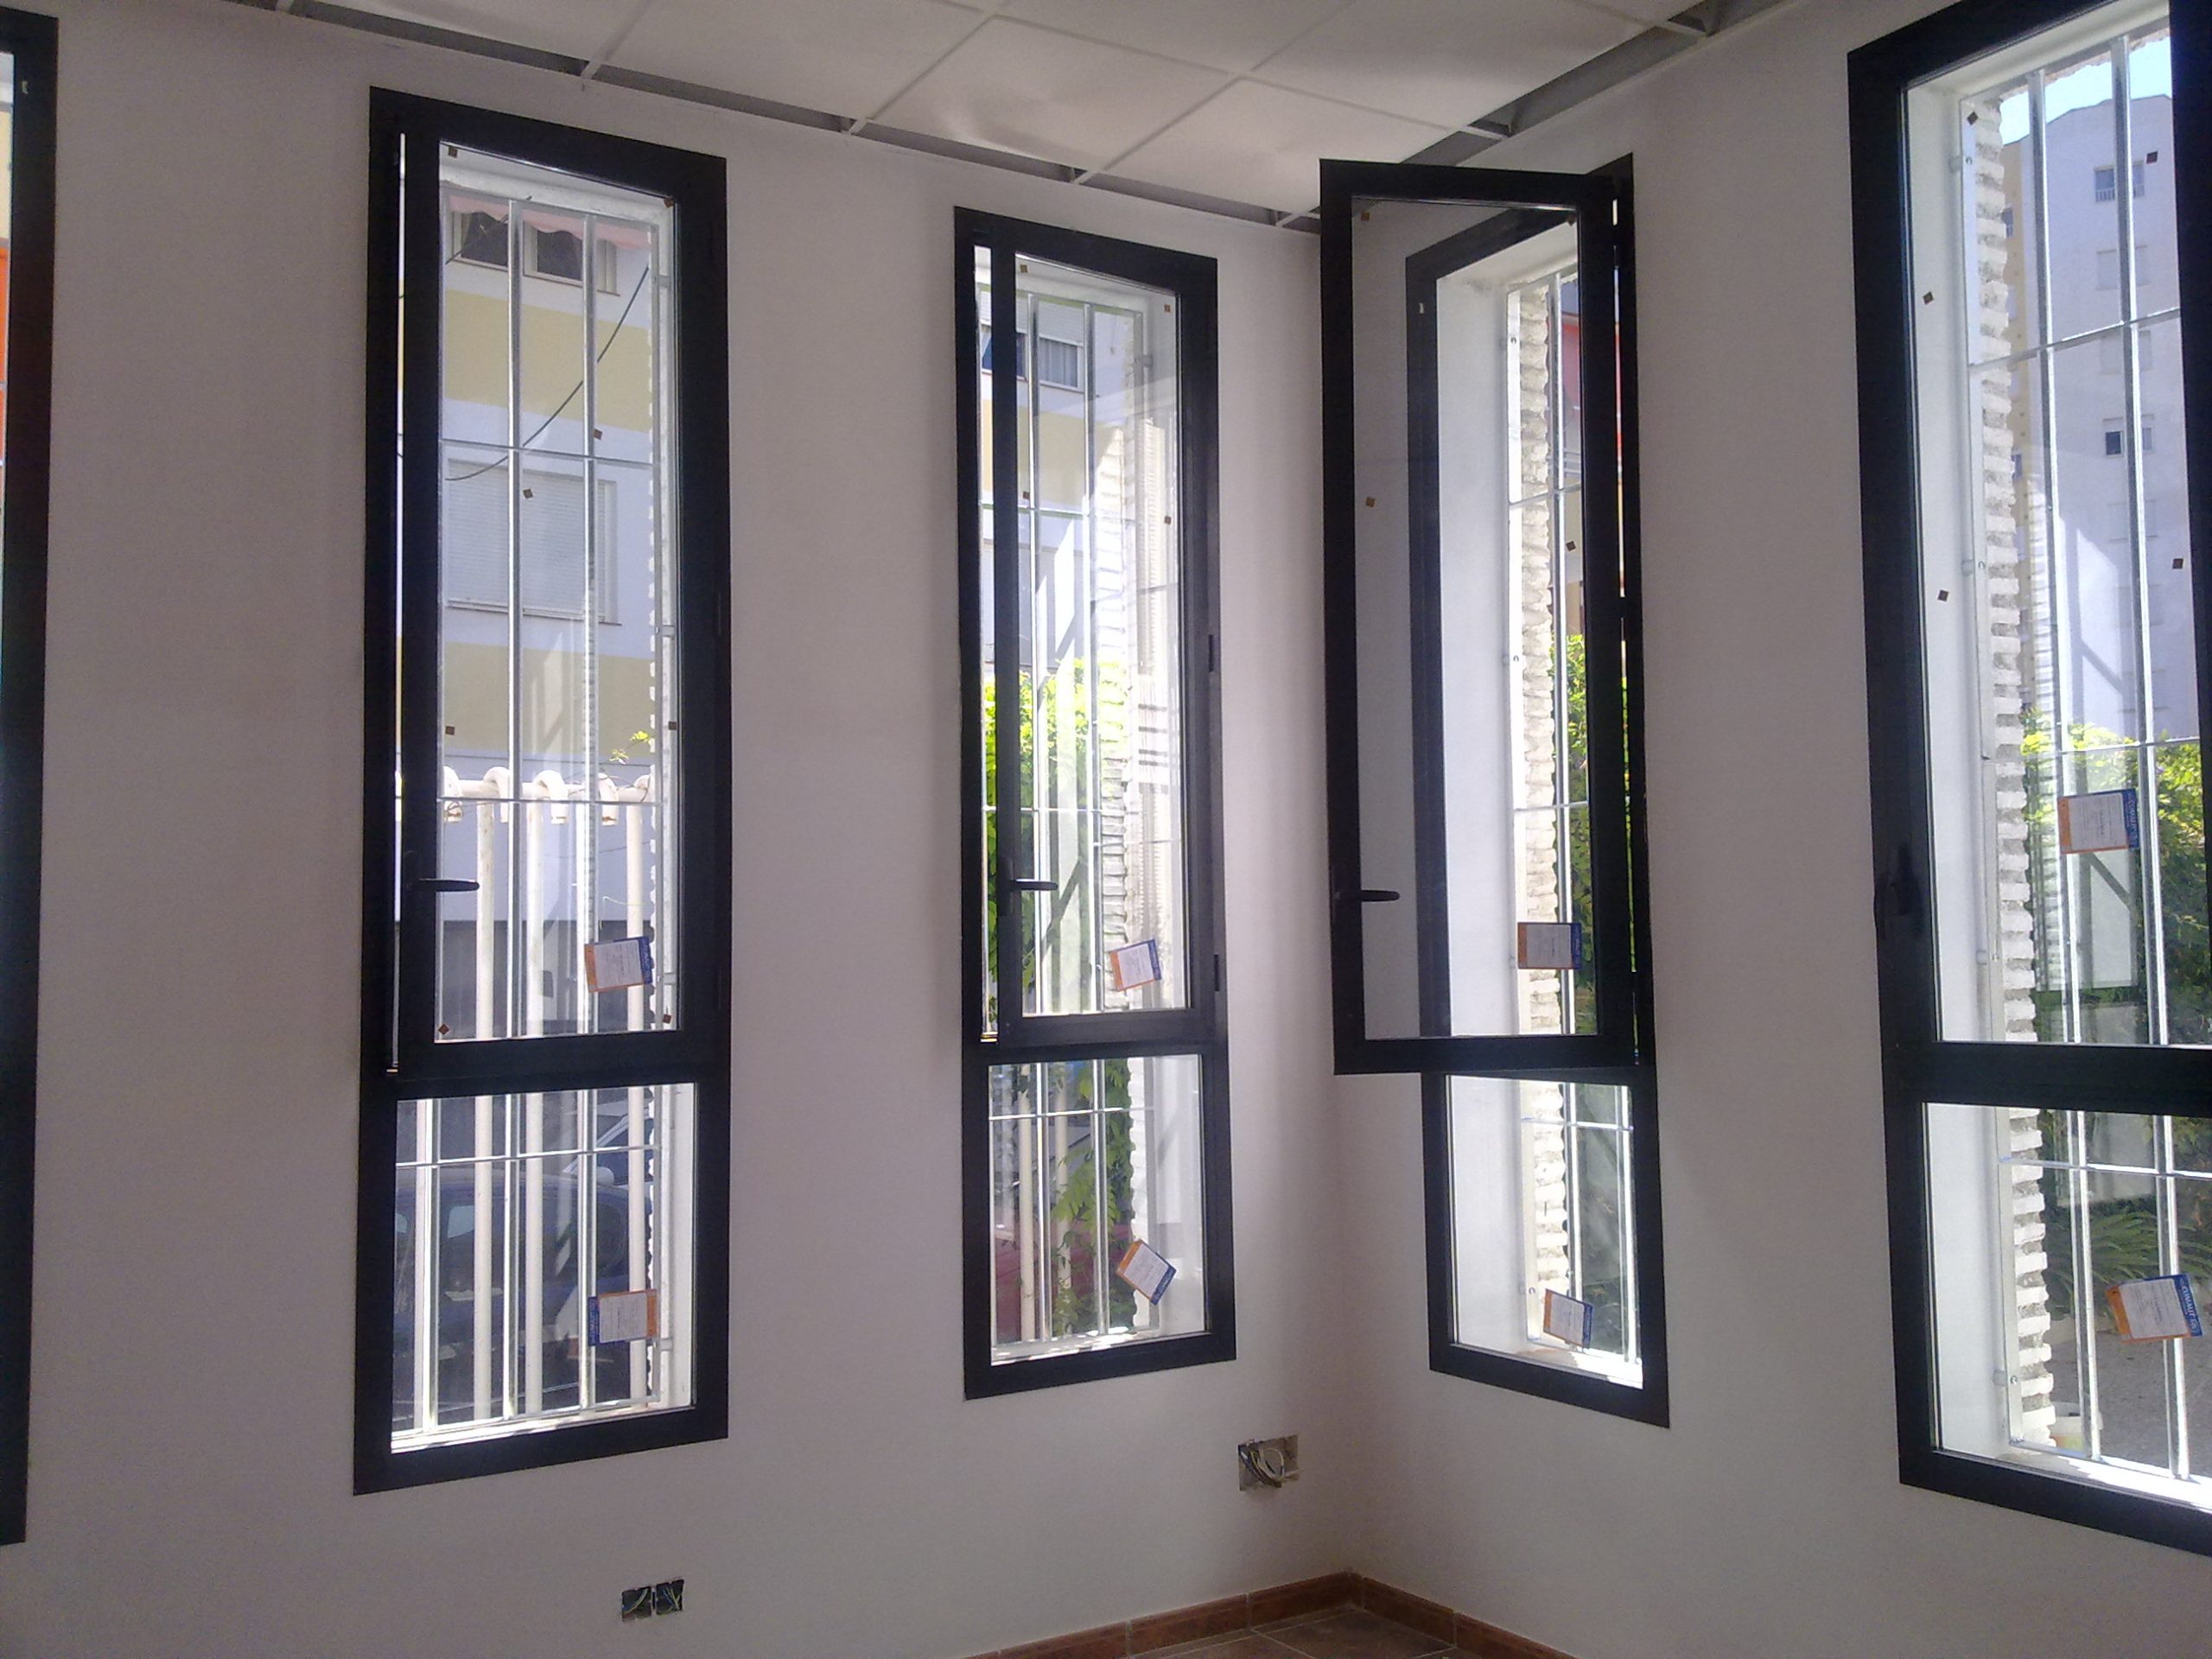 Interior de una habitación con ventanas de aluminio abiertas hacia el exterior.